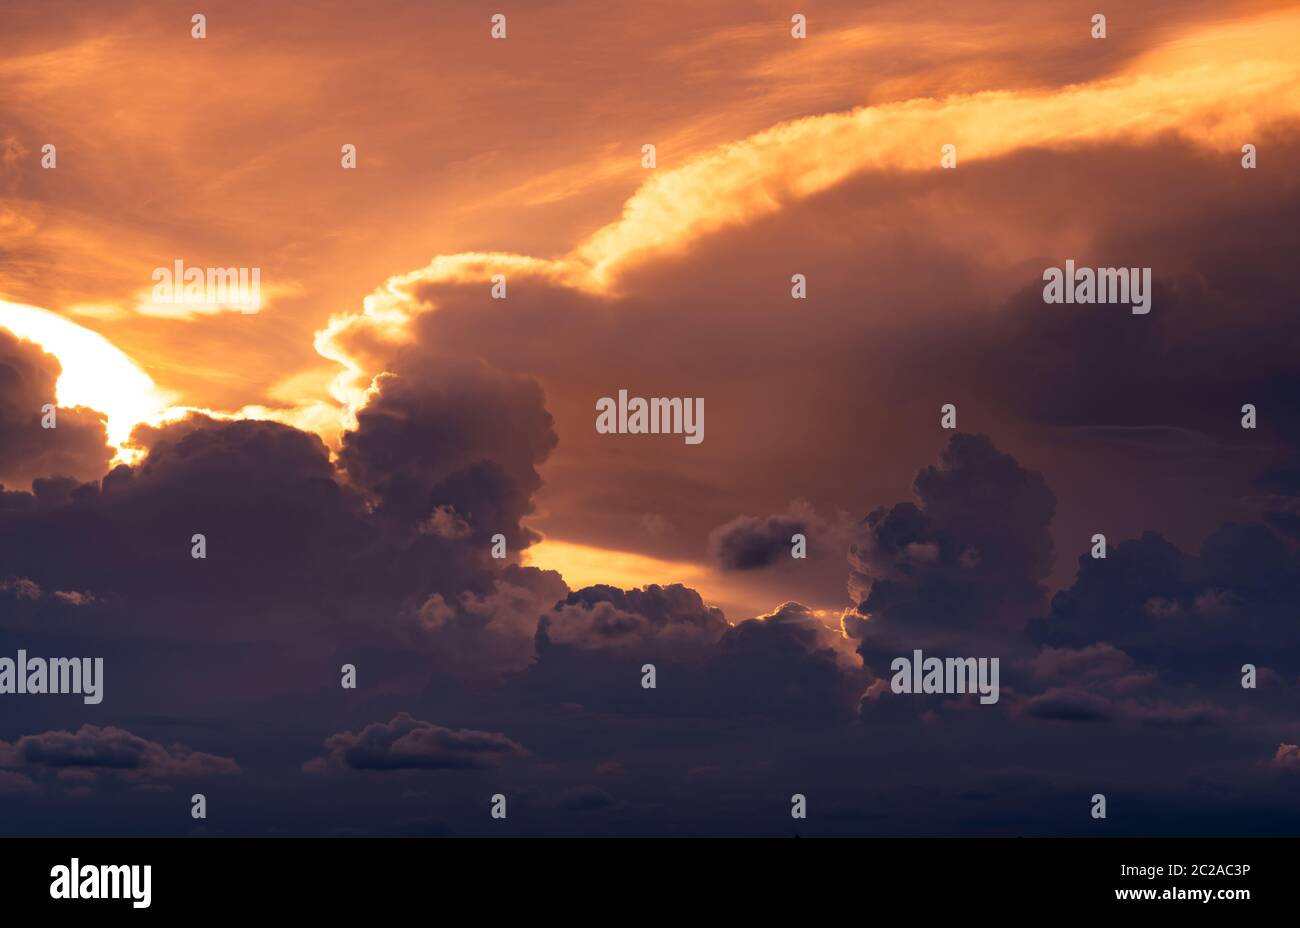 Sonnenuntergang. Goldenes Licht erstrahlt in Wolkenschichten. Flauschige Wolken in der Dämmerung. Himmel in der Dämmerung. Gott Licht. Wolkenlandschaft. Schönheit in der Natur. Kunstbild des Himmels Stockfoto